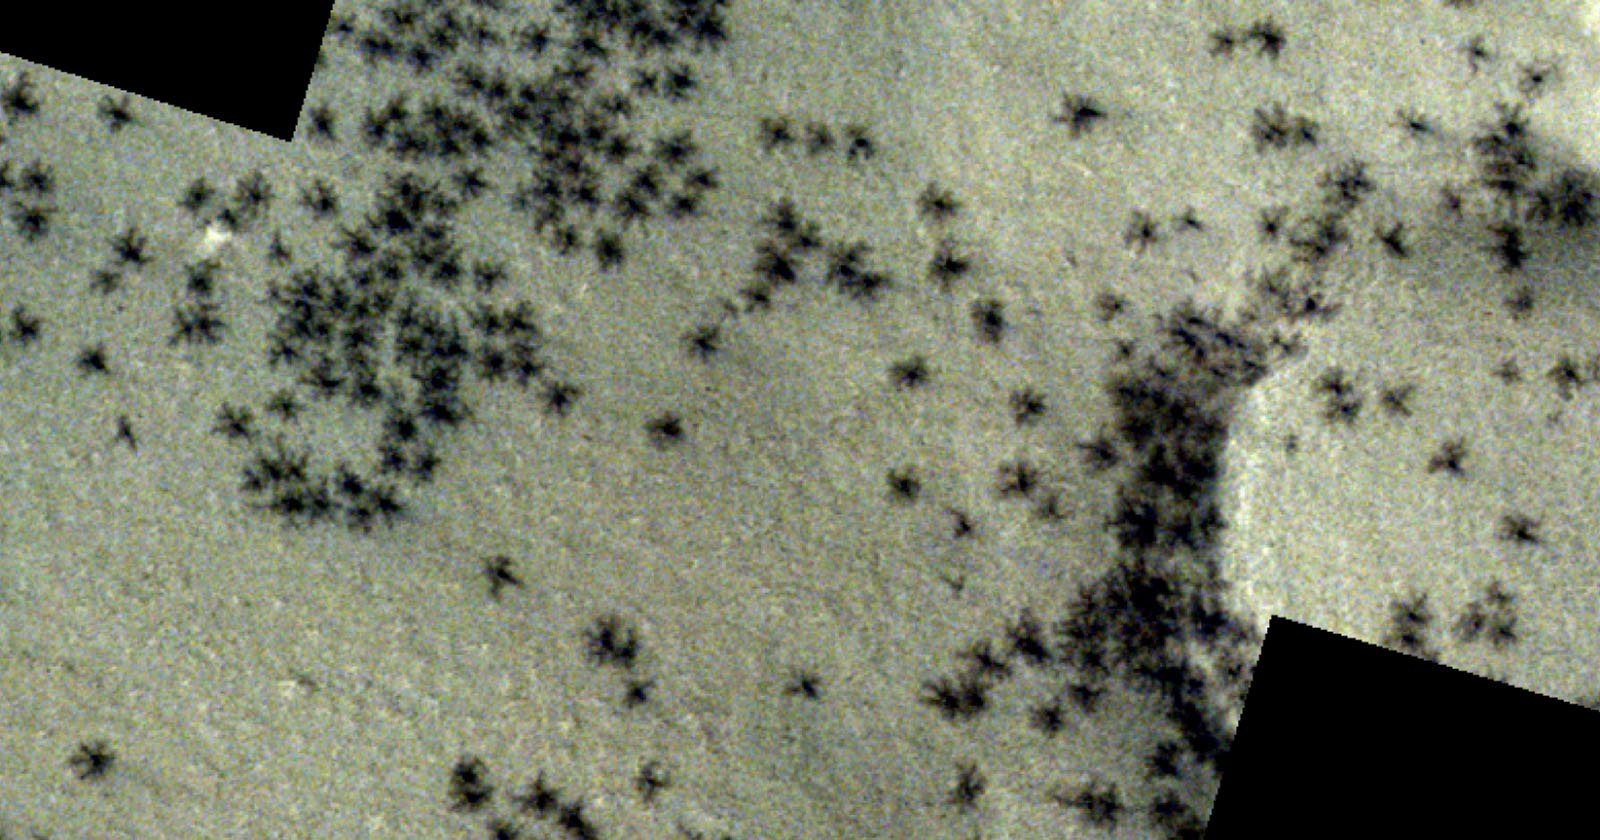 تظهر صورة الأقمار الصناعية جيشا من “العناكب السوداء” على سطح المريخ